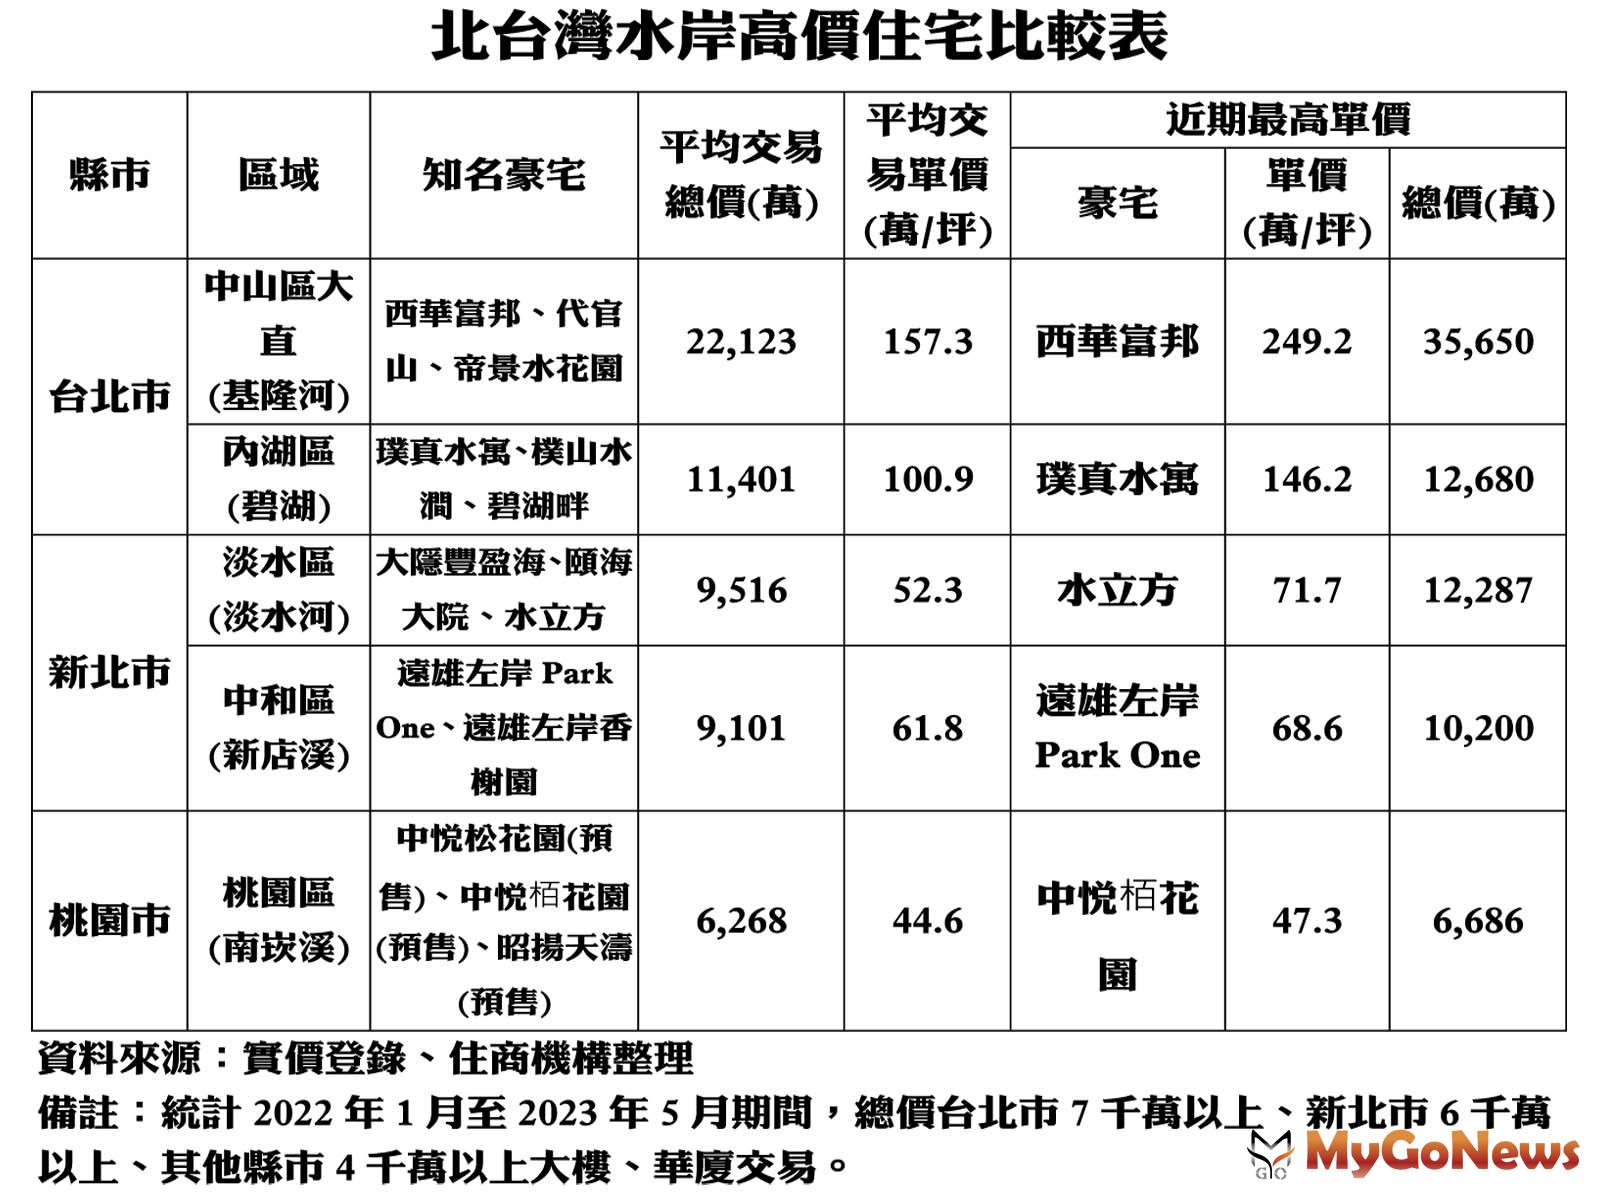 北台灣水岸高價住宅比較表 MyGoNews房地產新聞 市場快訊